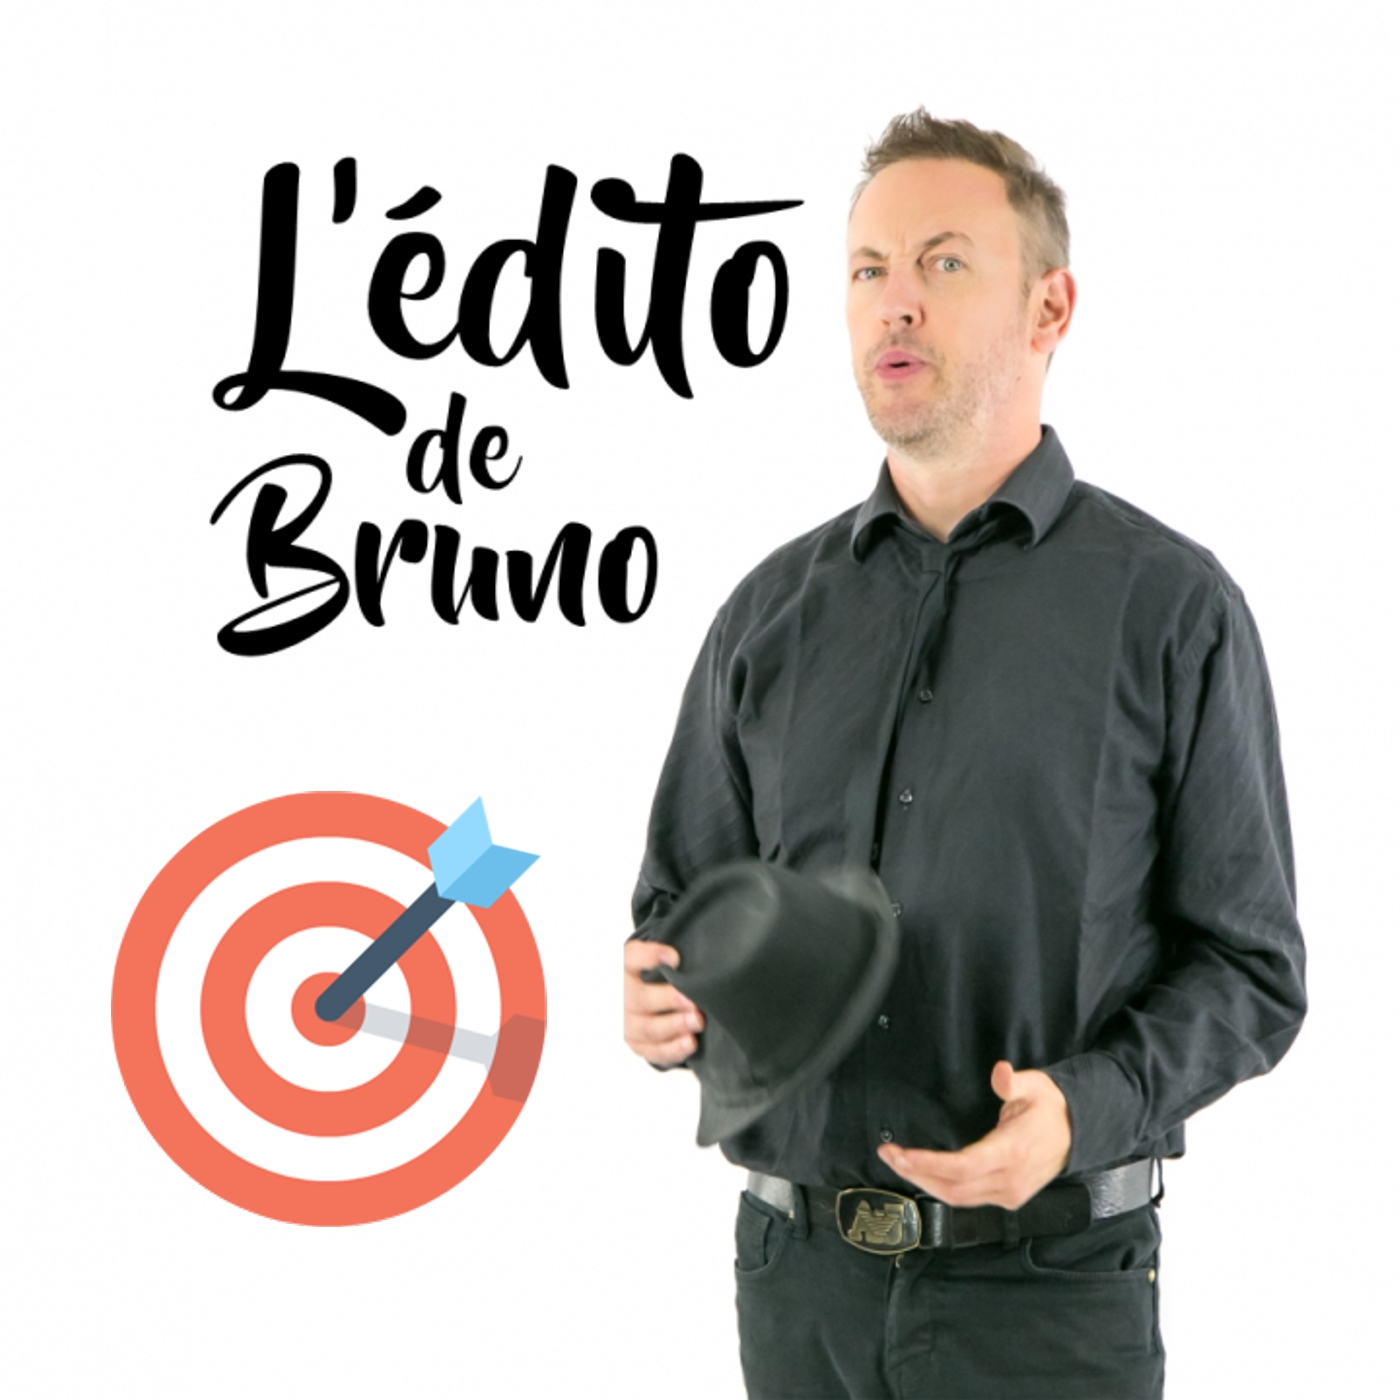 L'édito de Bruno du 15 06 2021 L'édito de Bruno de l'émission Tendance à m'plaire sur Radio G! L'édito de Bruno du 15 06 2021